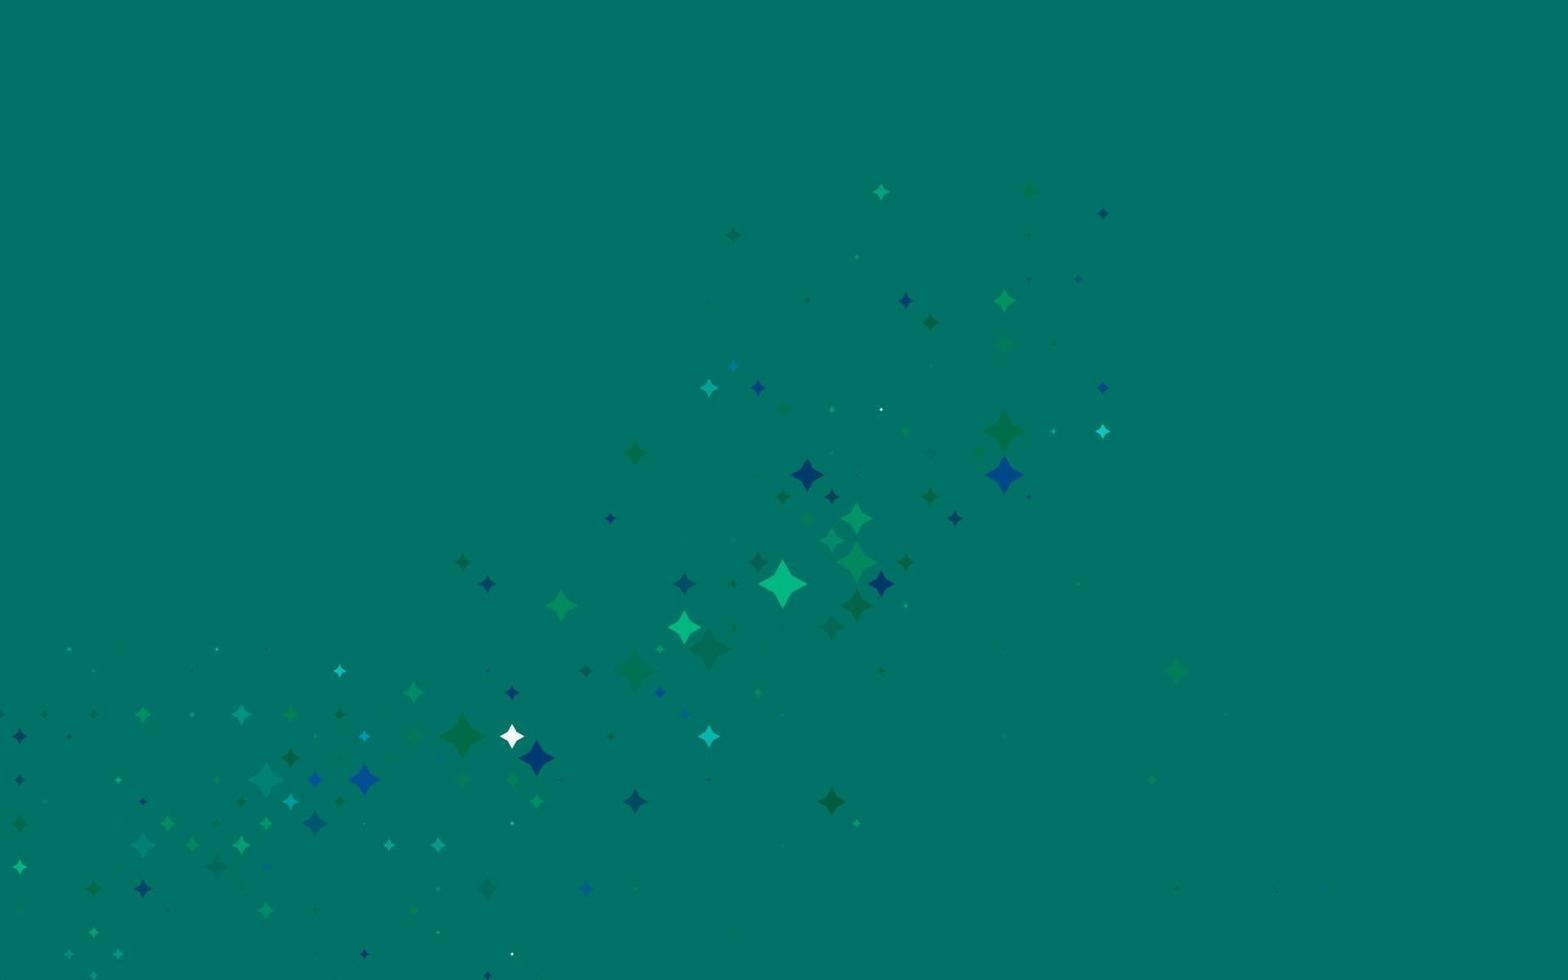 modelo de vetor azul claro, verde com estrelas do céu.